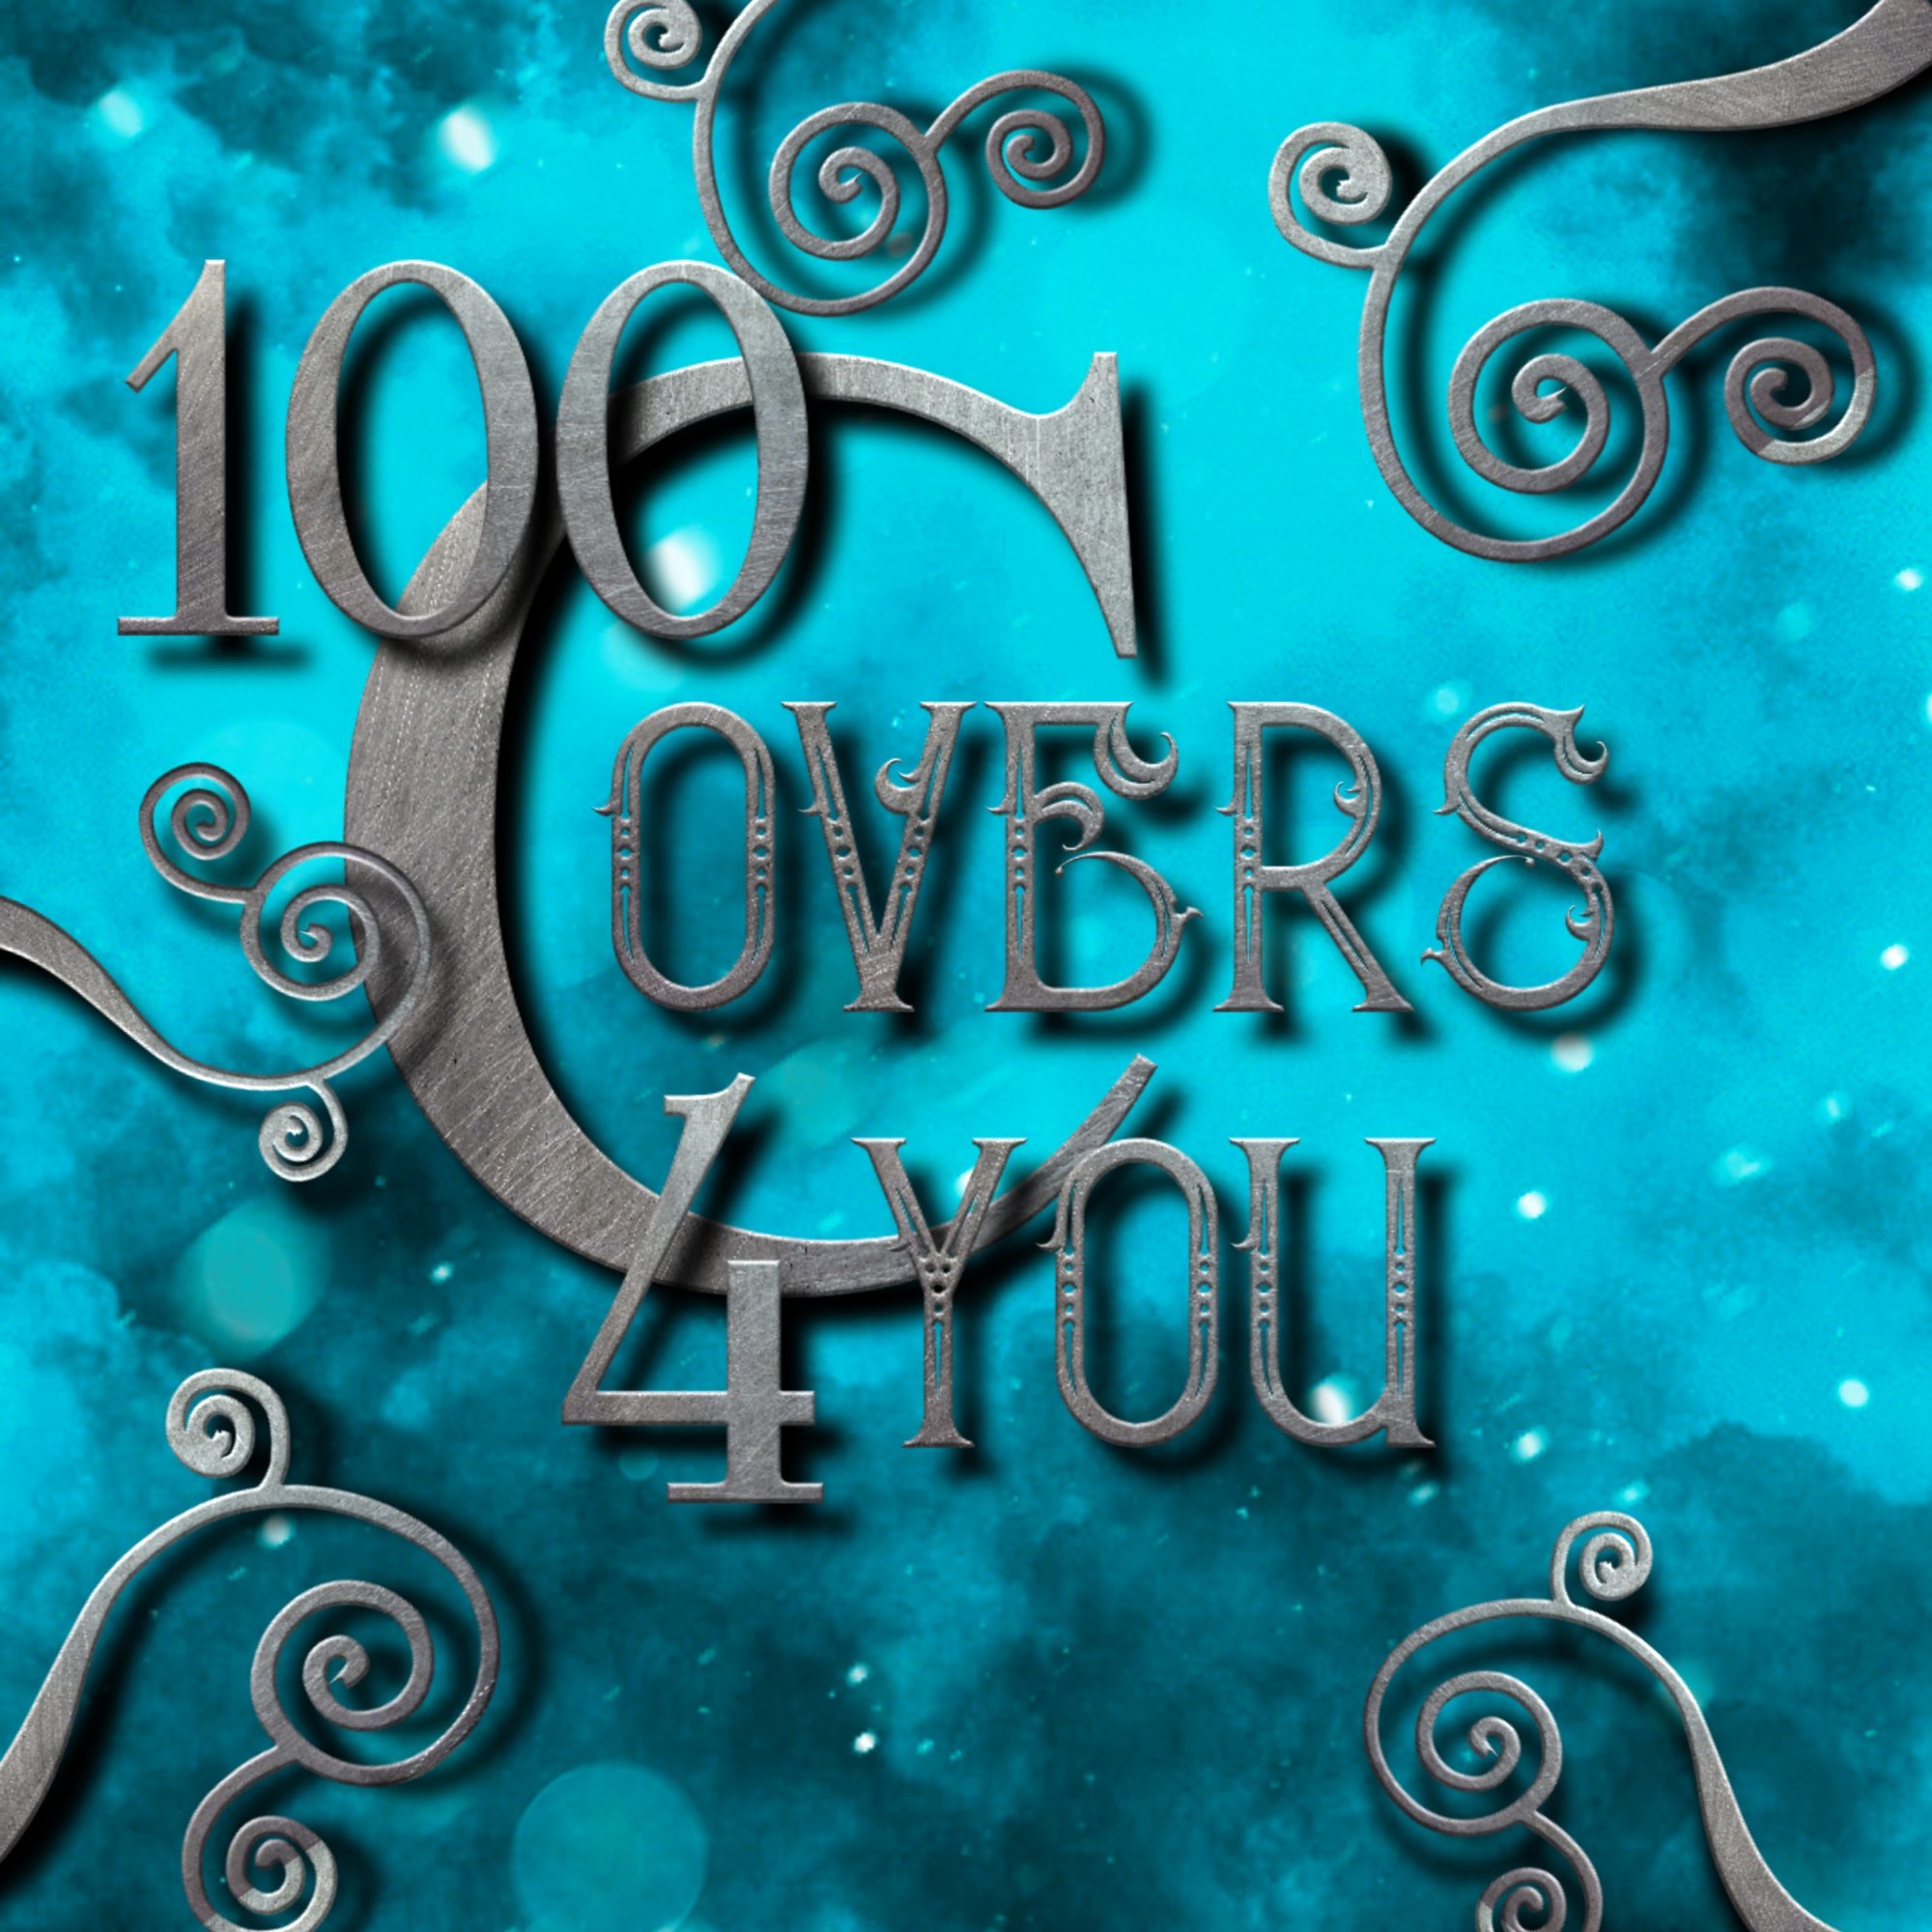 100covers4you.com